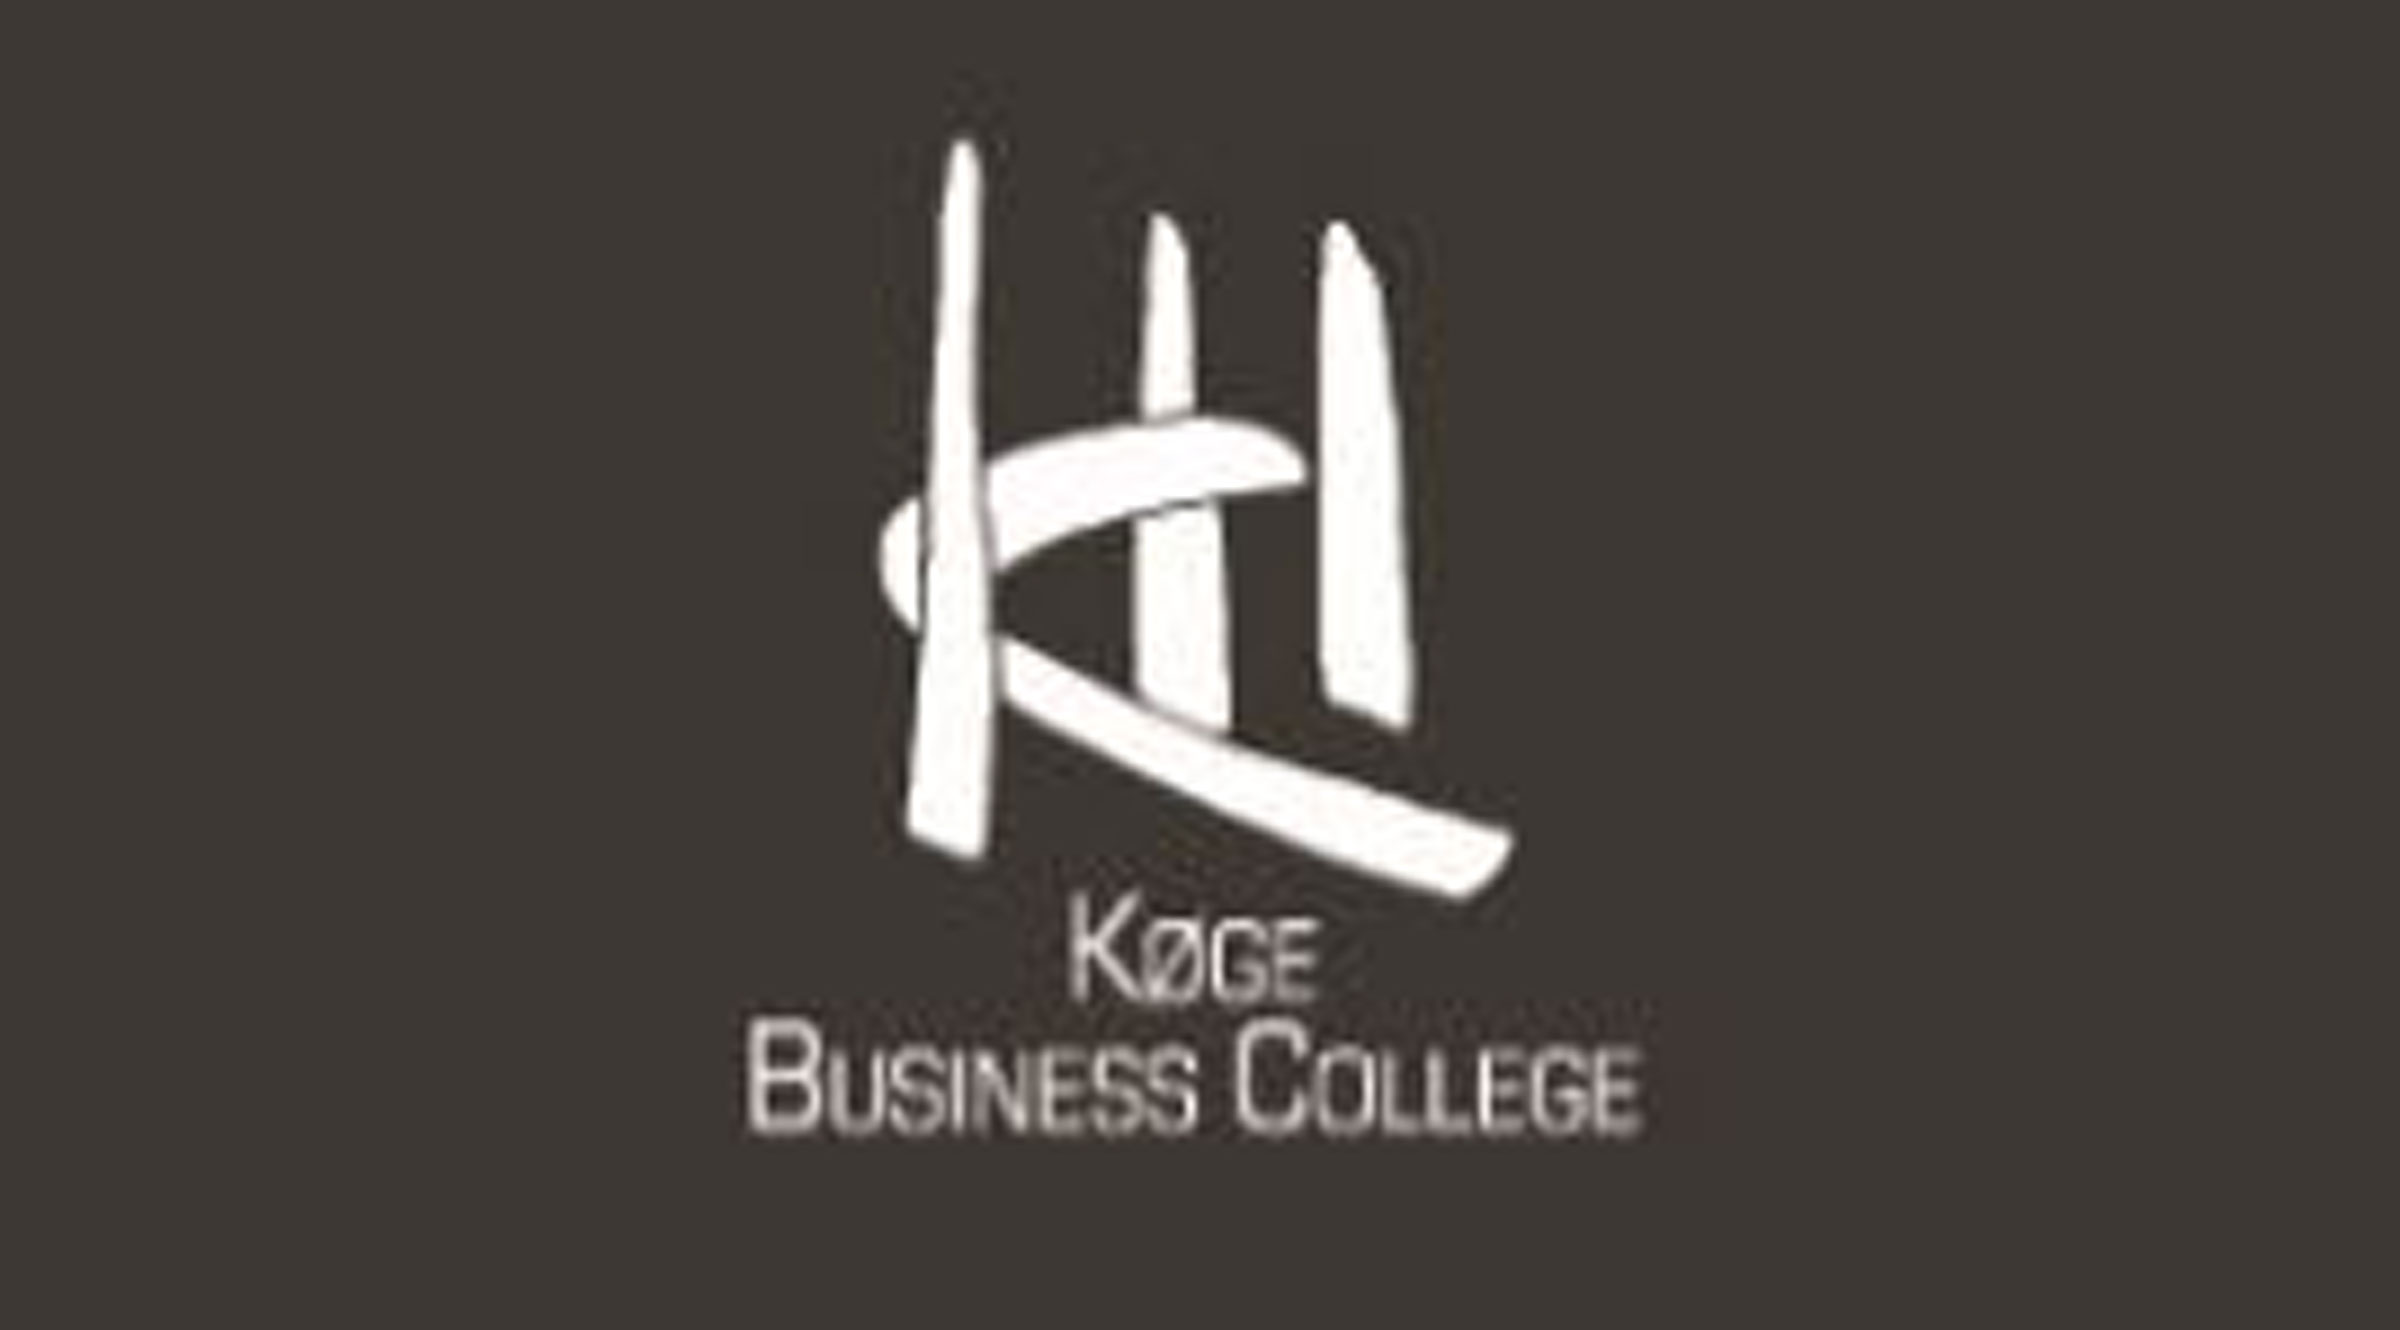 Koege business college kbc